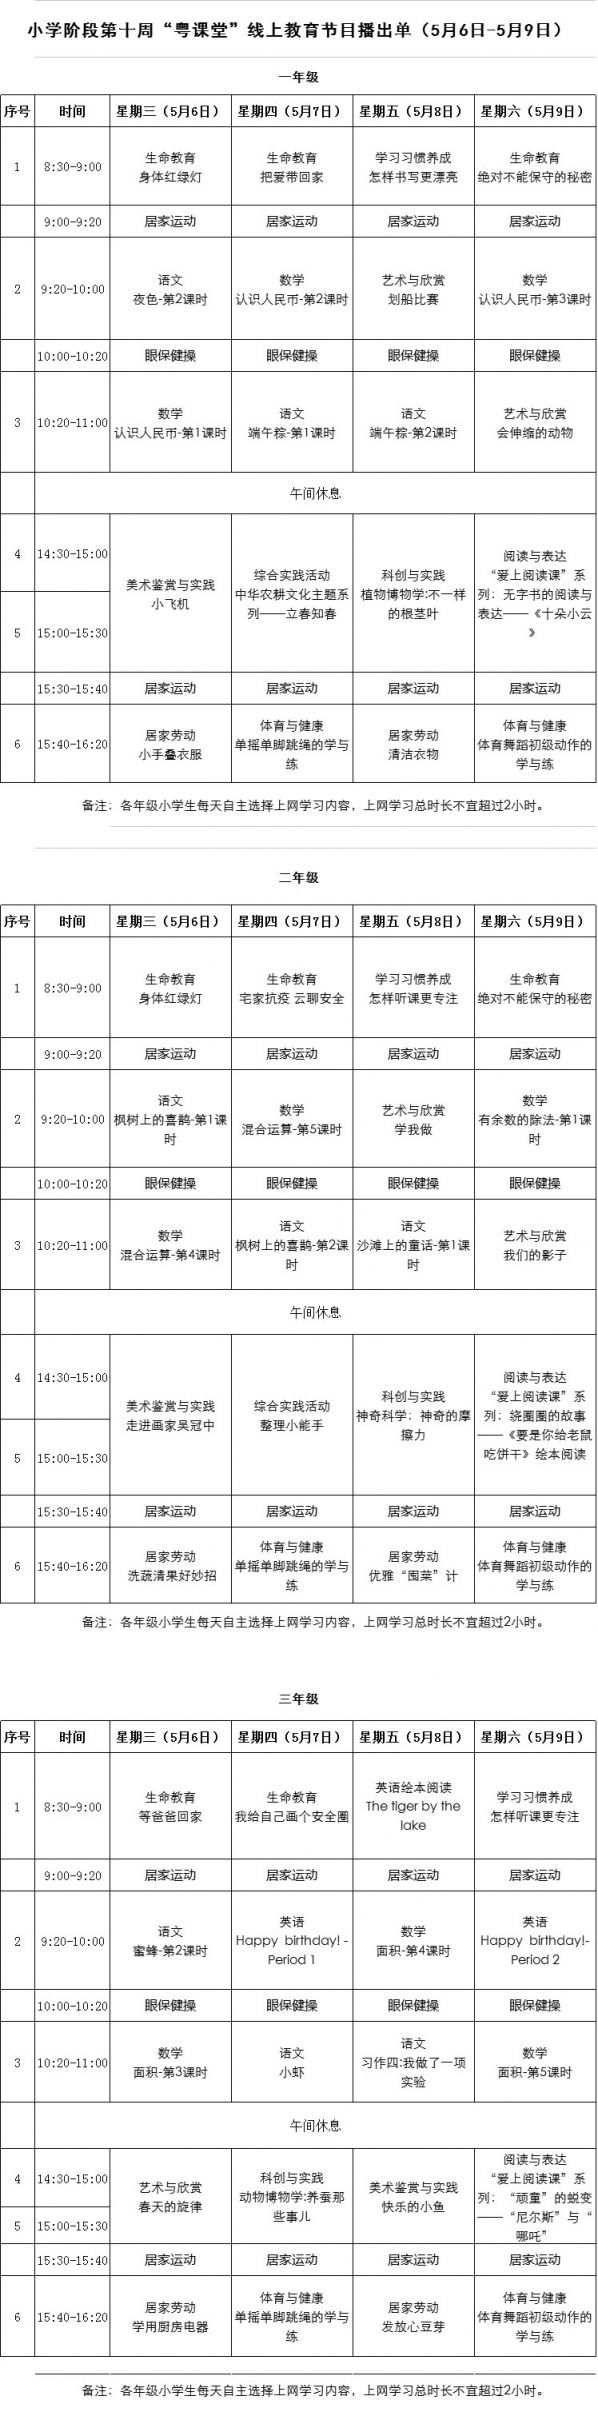 2020粤课堂小学课程表(持续更新)